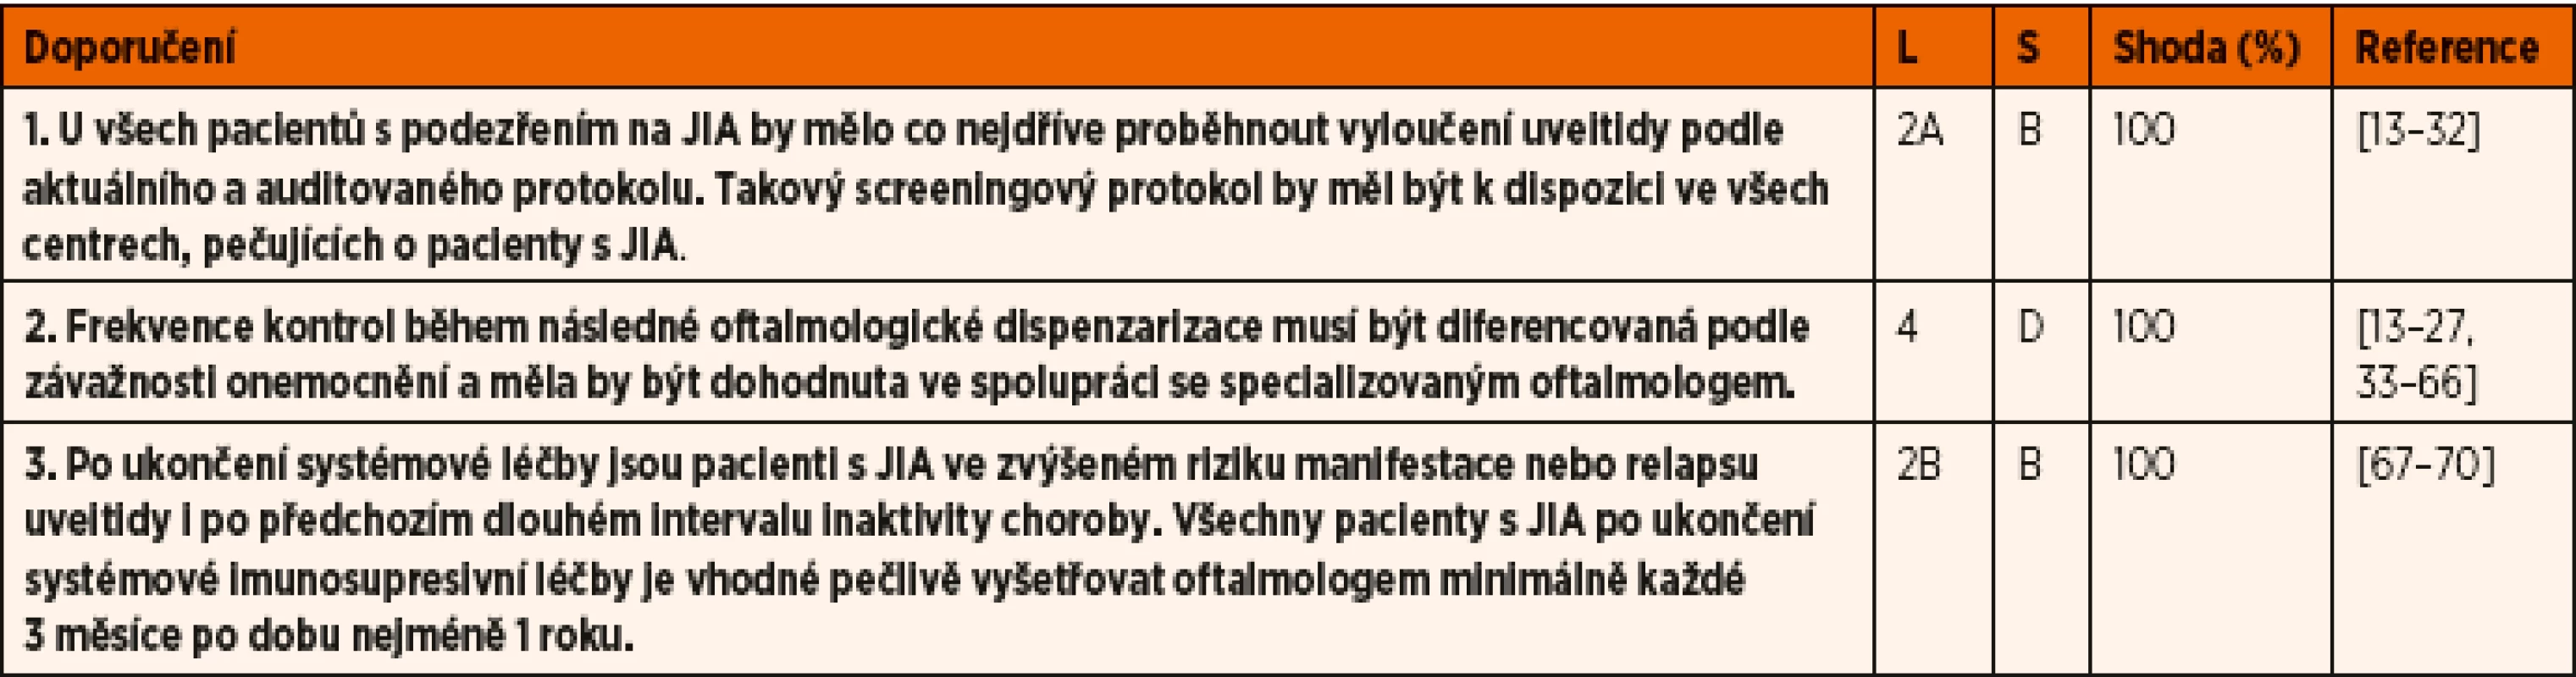 Doporučení pro diagnostiku a screening uveitidy asociované s juvenilní idiopatickou artritidou (JIA).